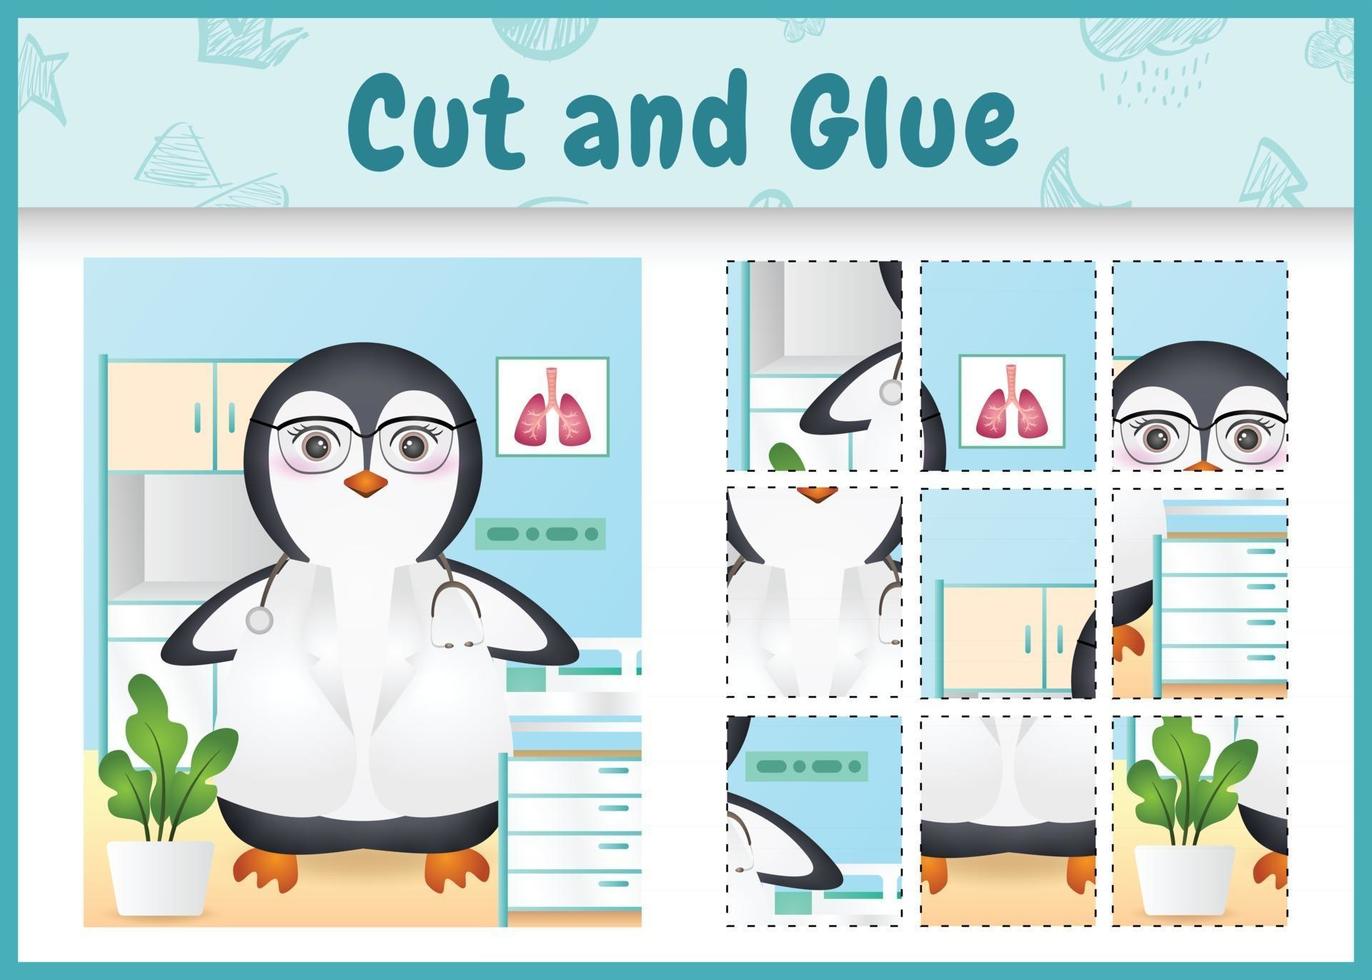 jeu de société pour enfants coupé et collé avec une illustration de personnage de médecin pingouin mignon vecteur